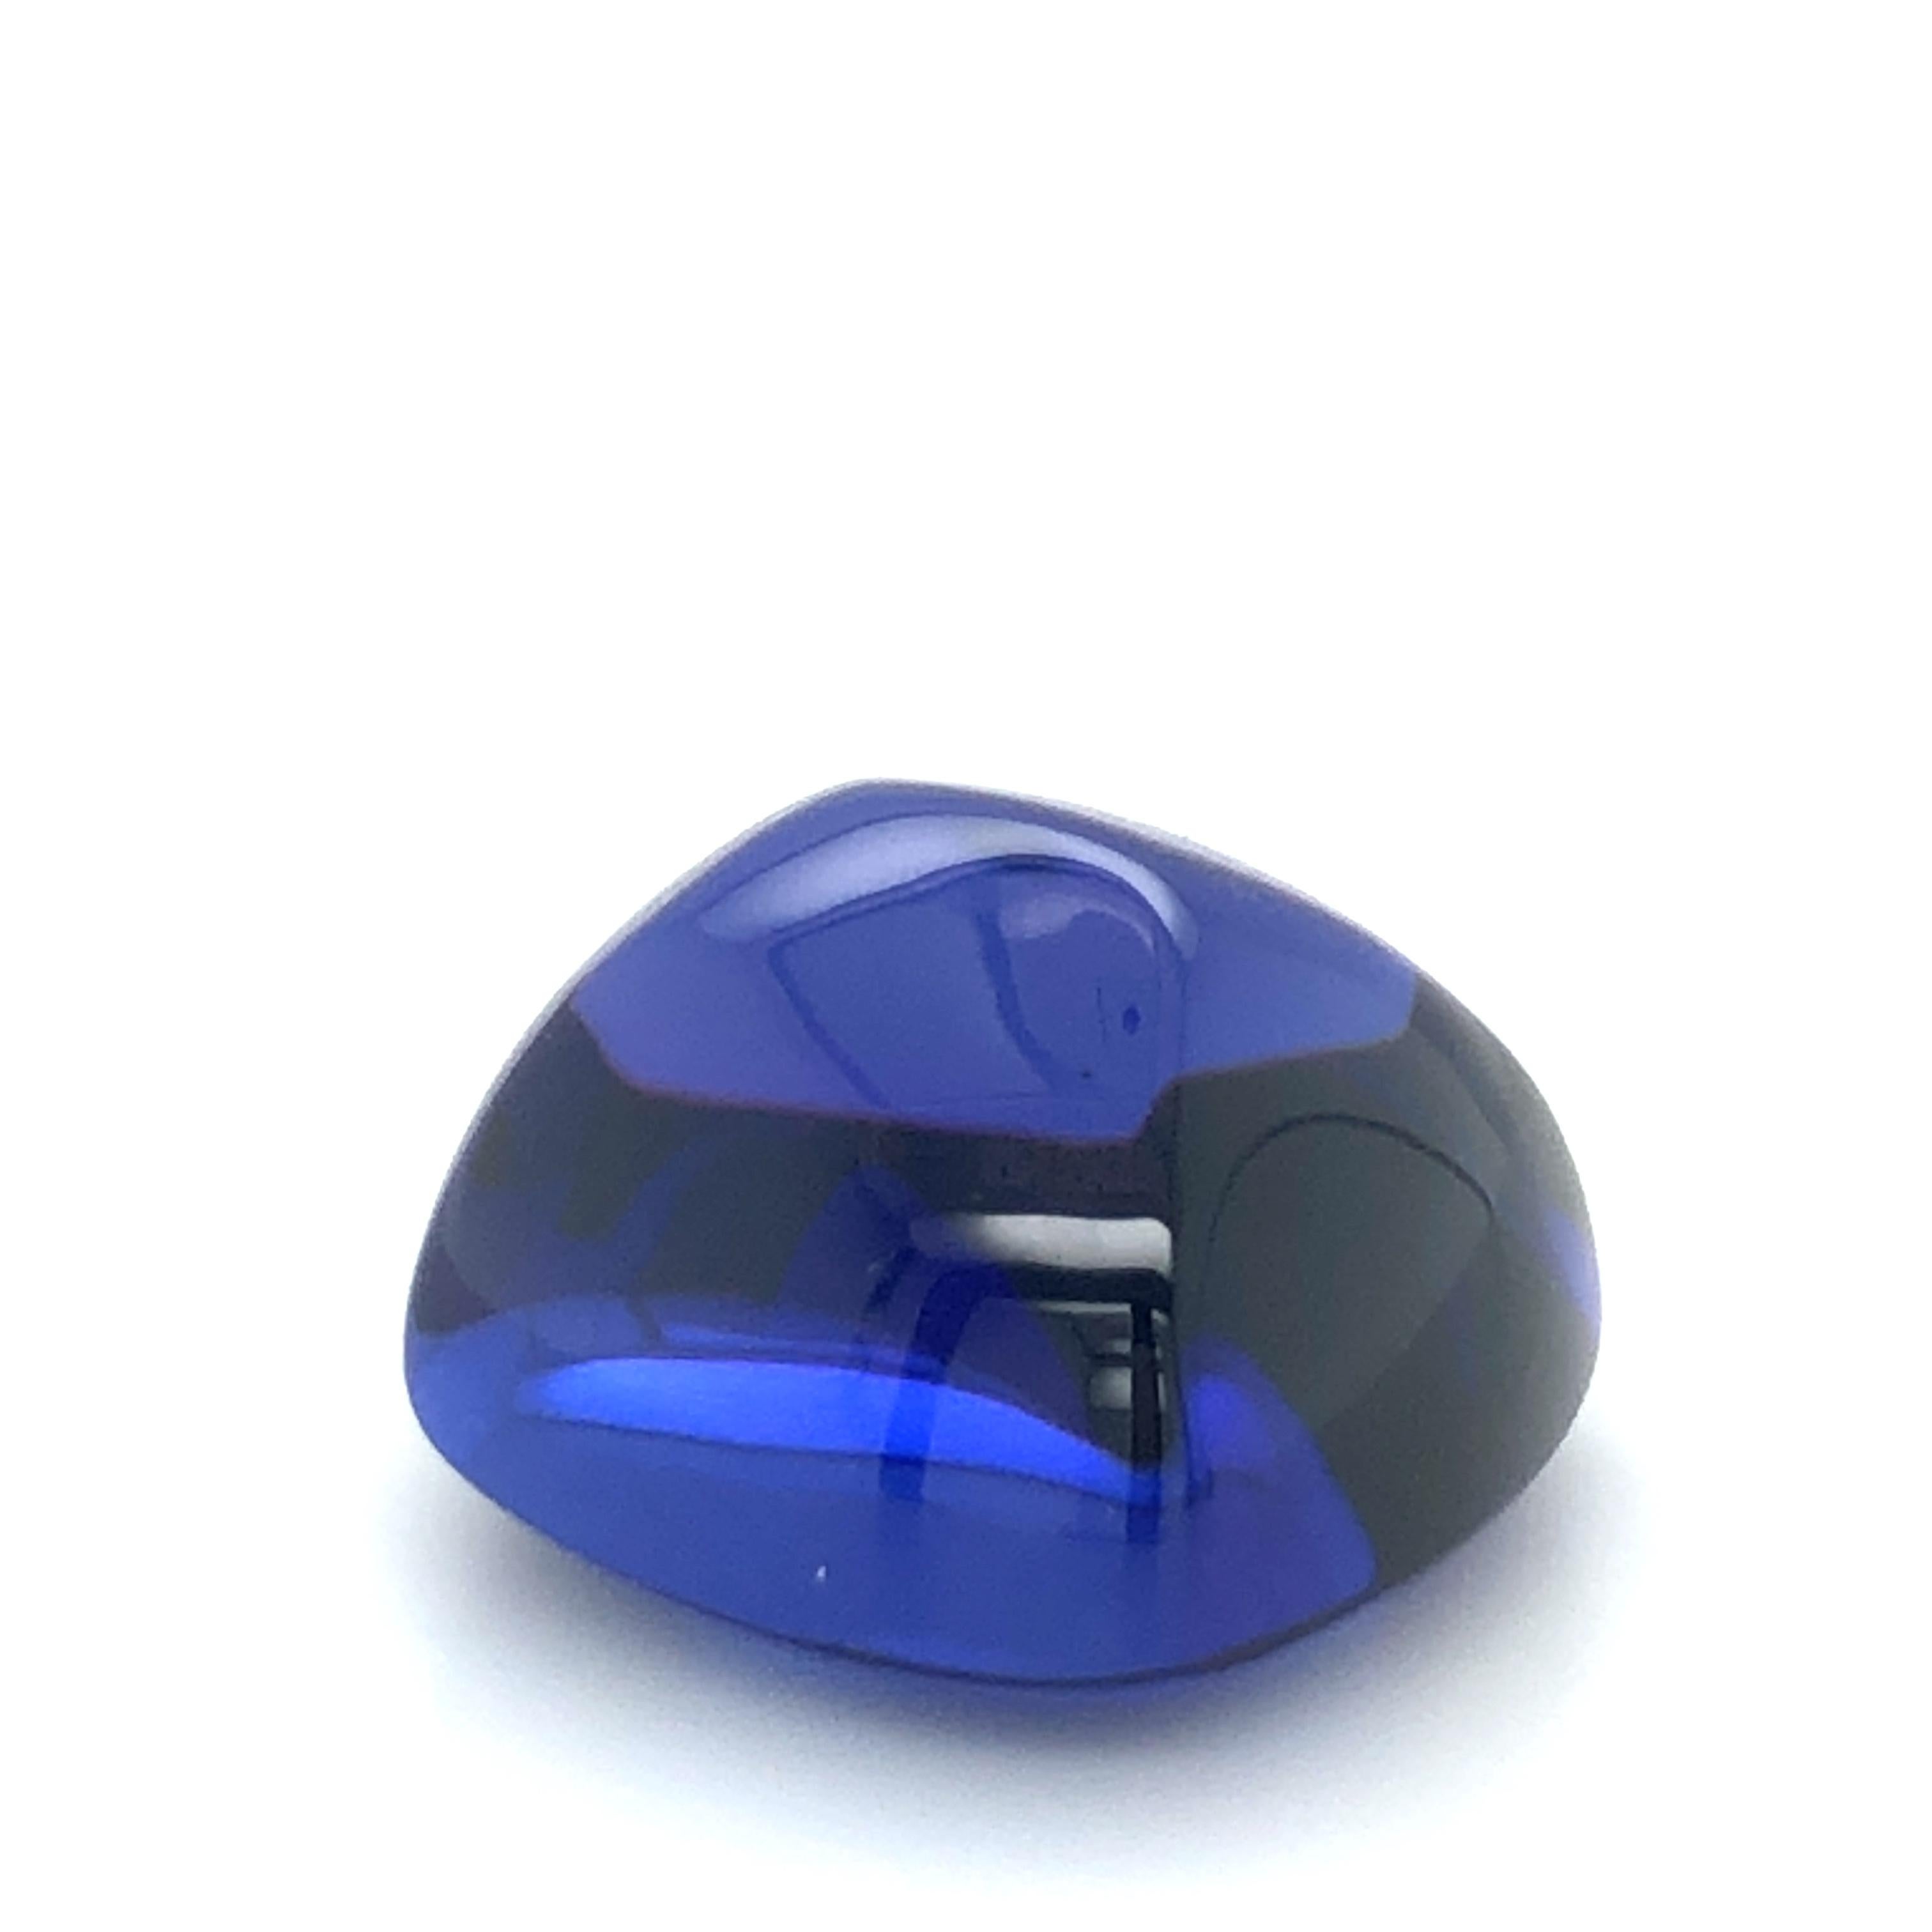 Schöner großer Zuckerhut-Tansanit von 26,20 ct. Schöne und satte violett-blaue Farbe, die gleichmäßig über den Stein verteilt ist. Großes Kristall und 100% augenrein. Der Zuckerhut-Schliff ist eine Abwandlung des klassischen Cabochon-Schliffs. Die